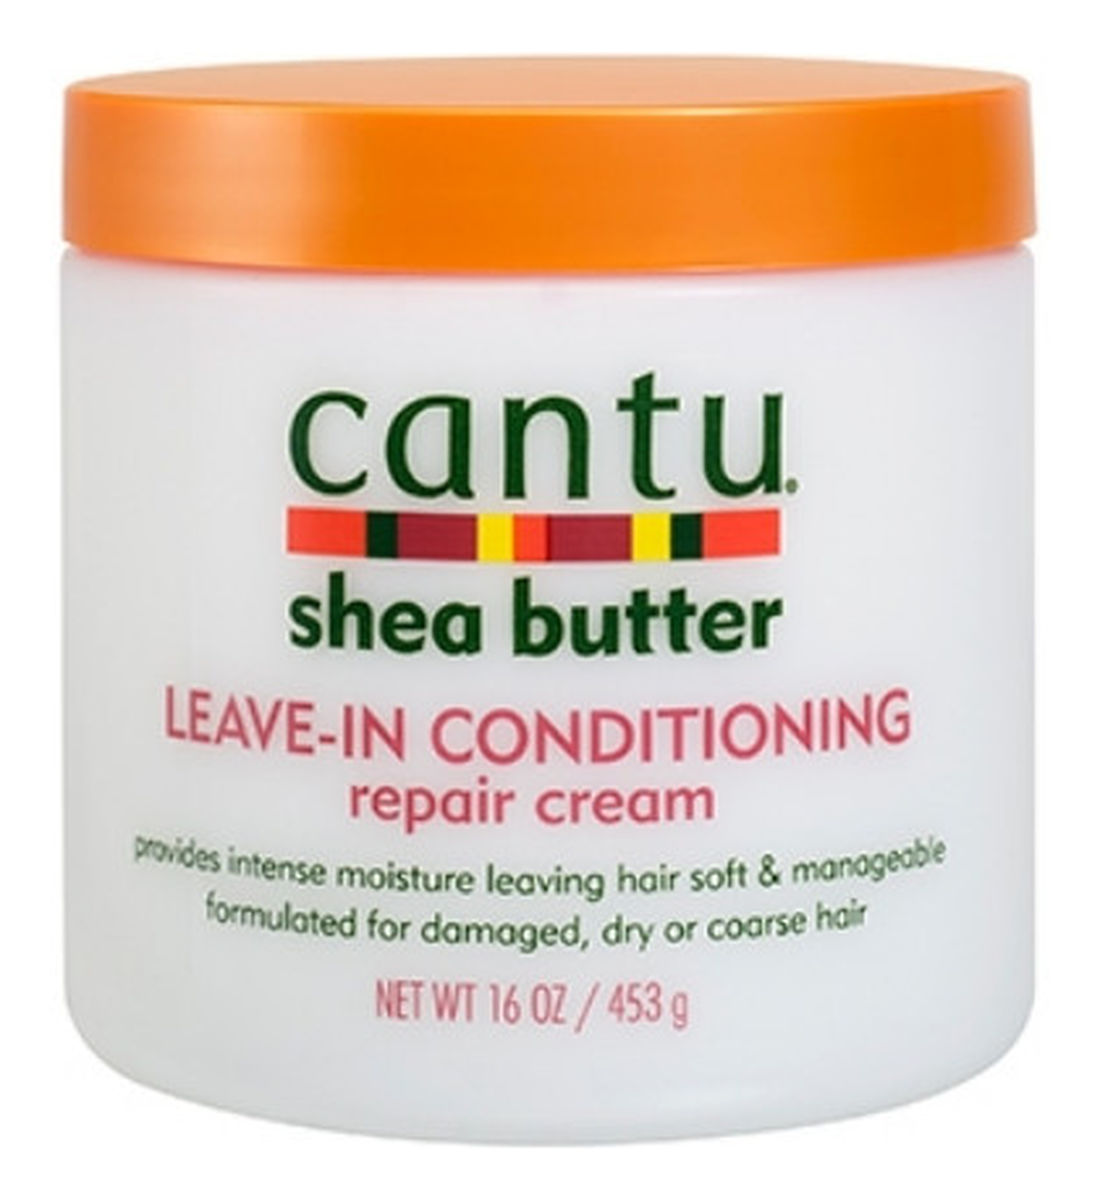 Leave-in Conditioning Repair Cream - odżywka do włosów osłabionych